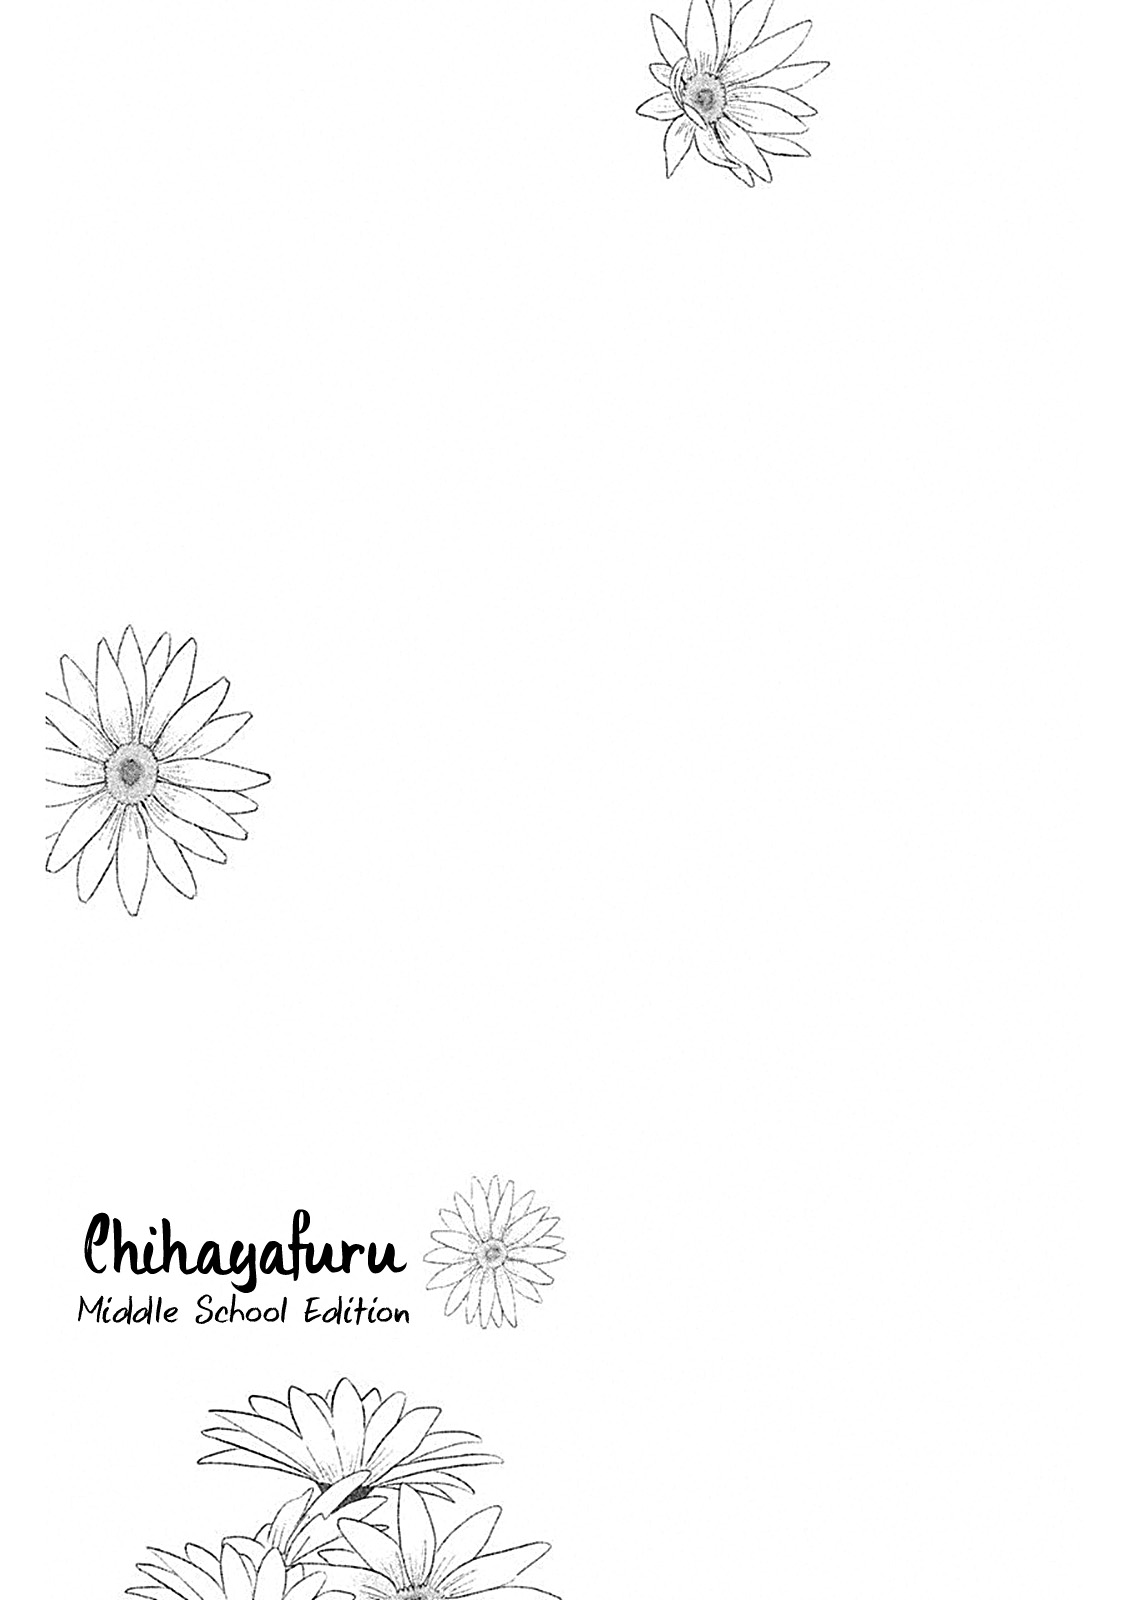 Chihayafuru: Middle School Arc Vol. 1 Ch. 6 6th Poem